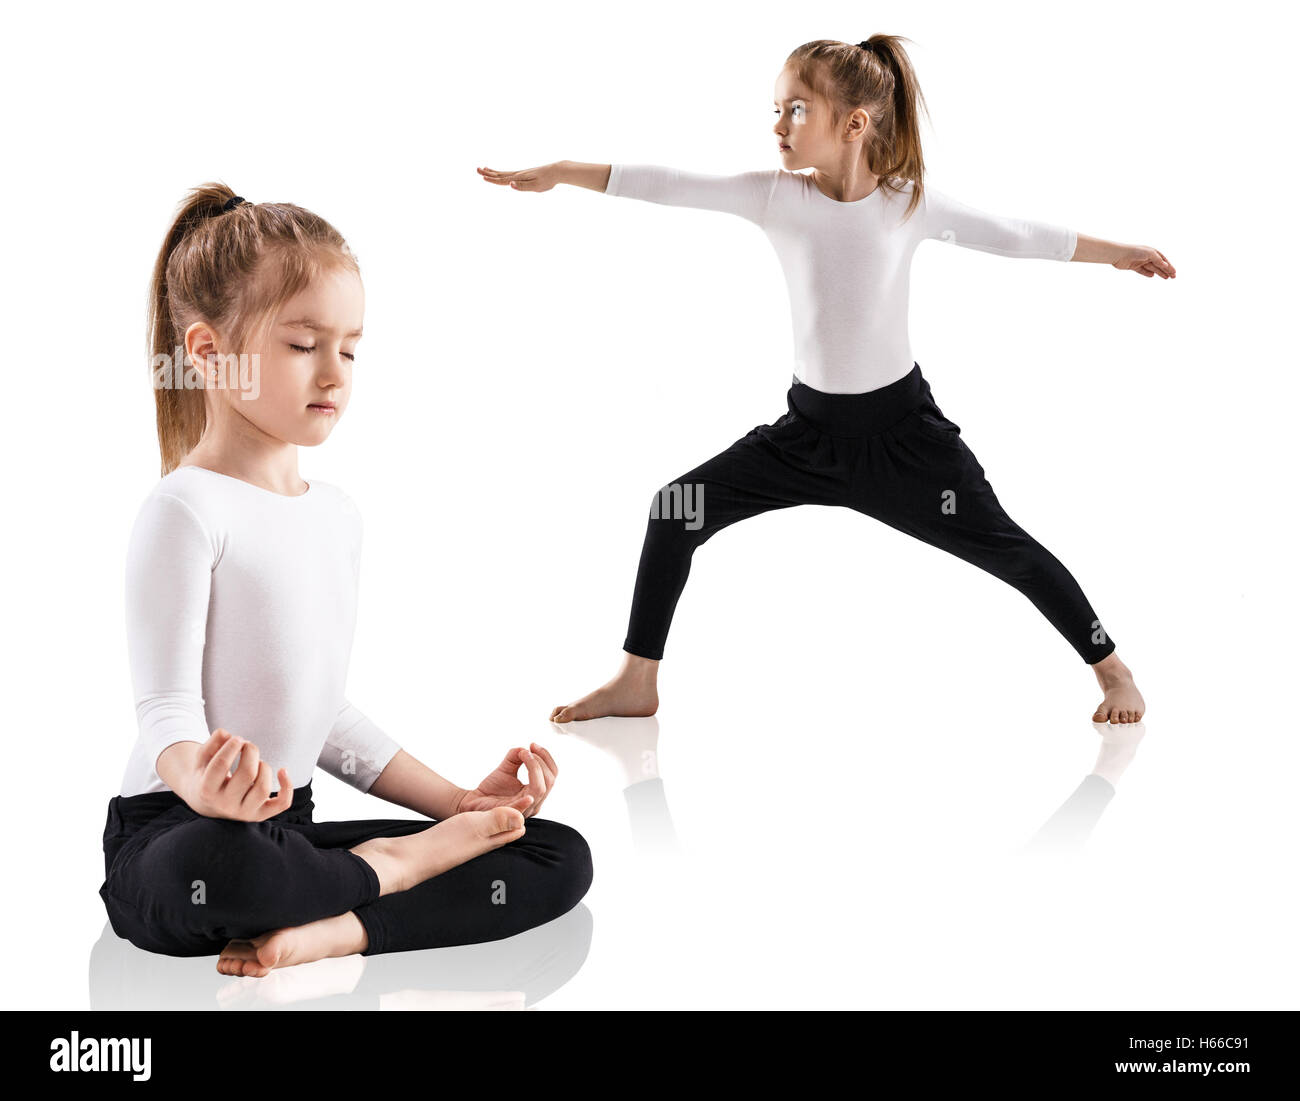 Little girl doing yoga exercises over white background Stock Photo